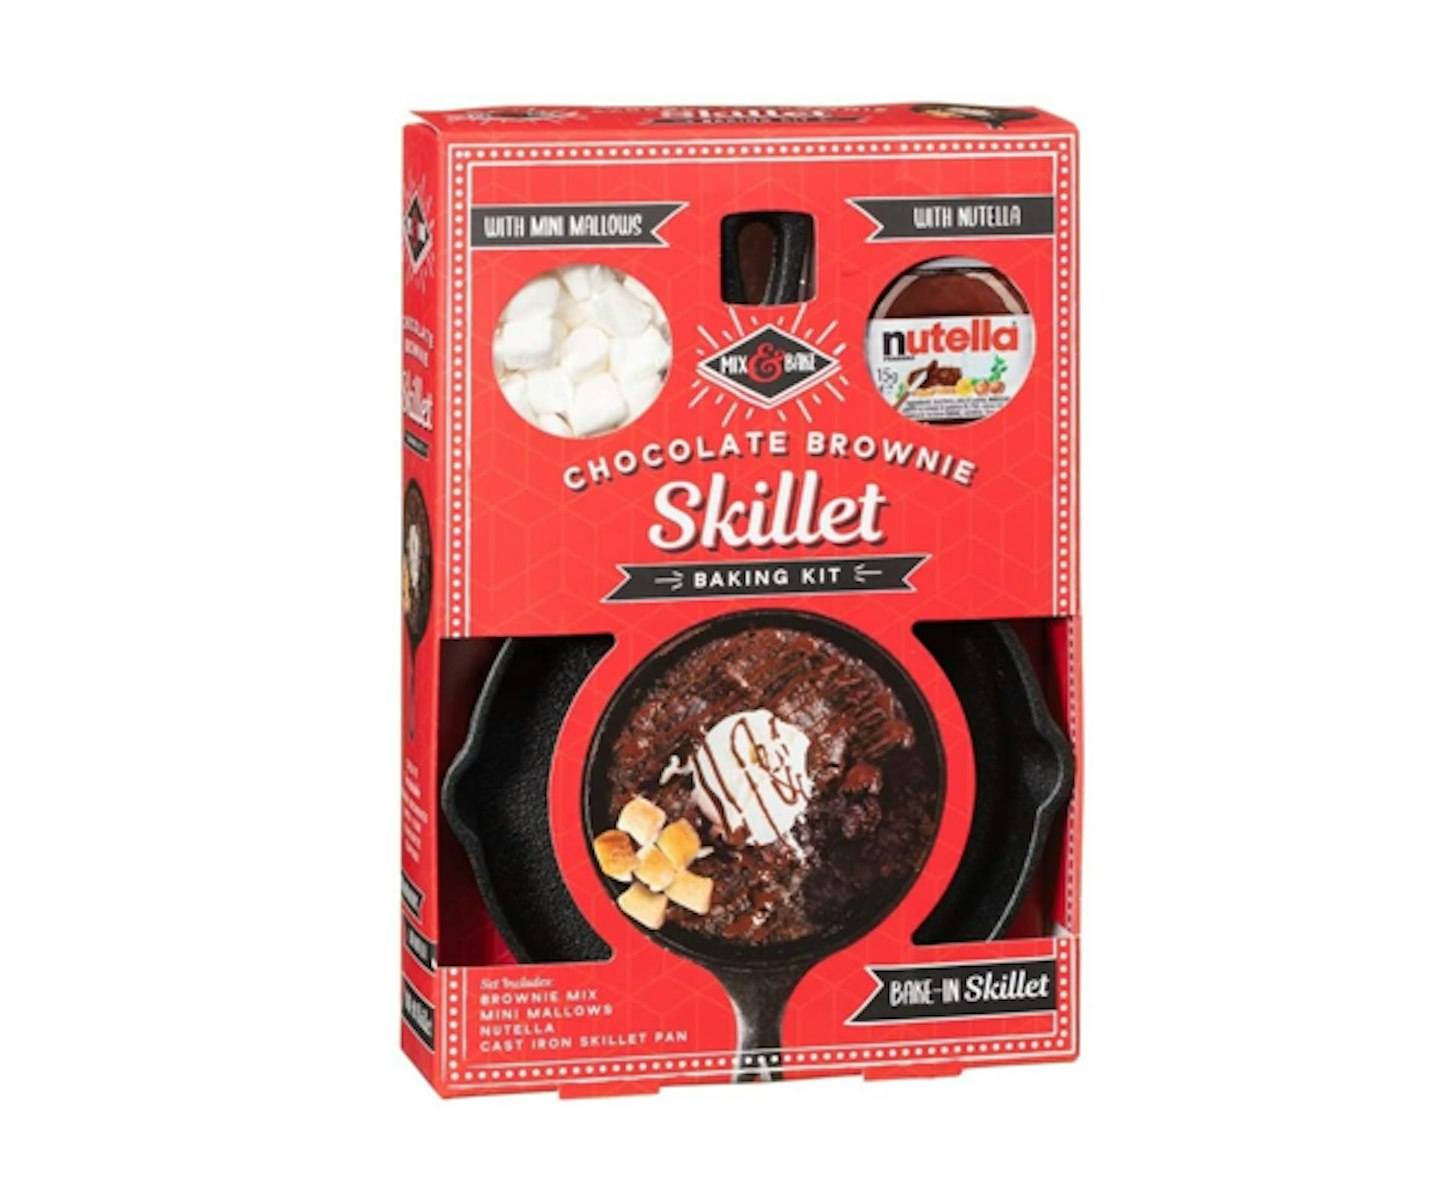 Skillet chocolate brownie